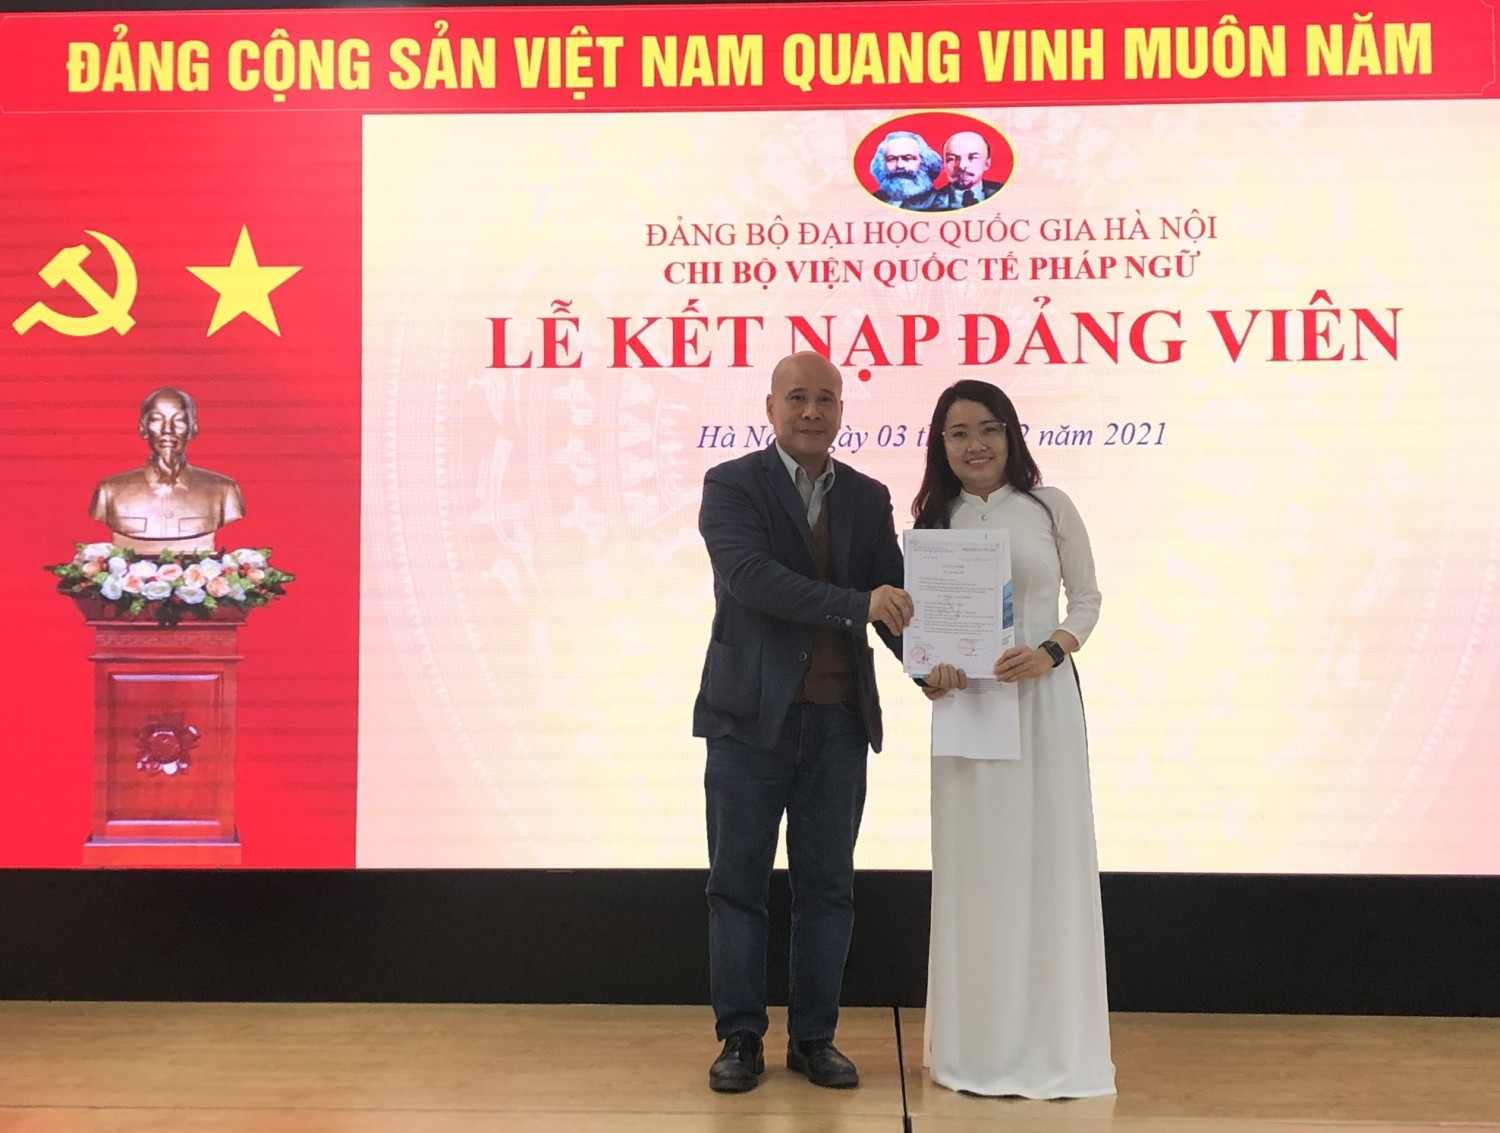 Đ/c Ngô Tự Lập - Bí Thư Chi bộ Viện trao quyết định kết nạp Đảng viên cho đ/c Nguyễn Thị Cẩm Linh